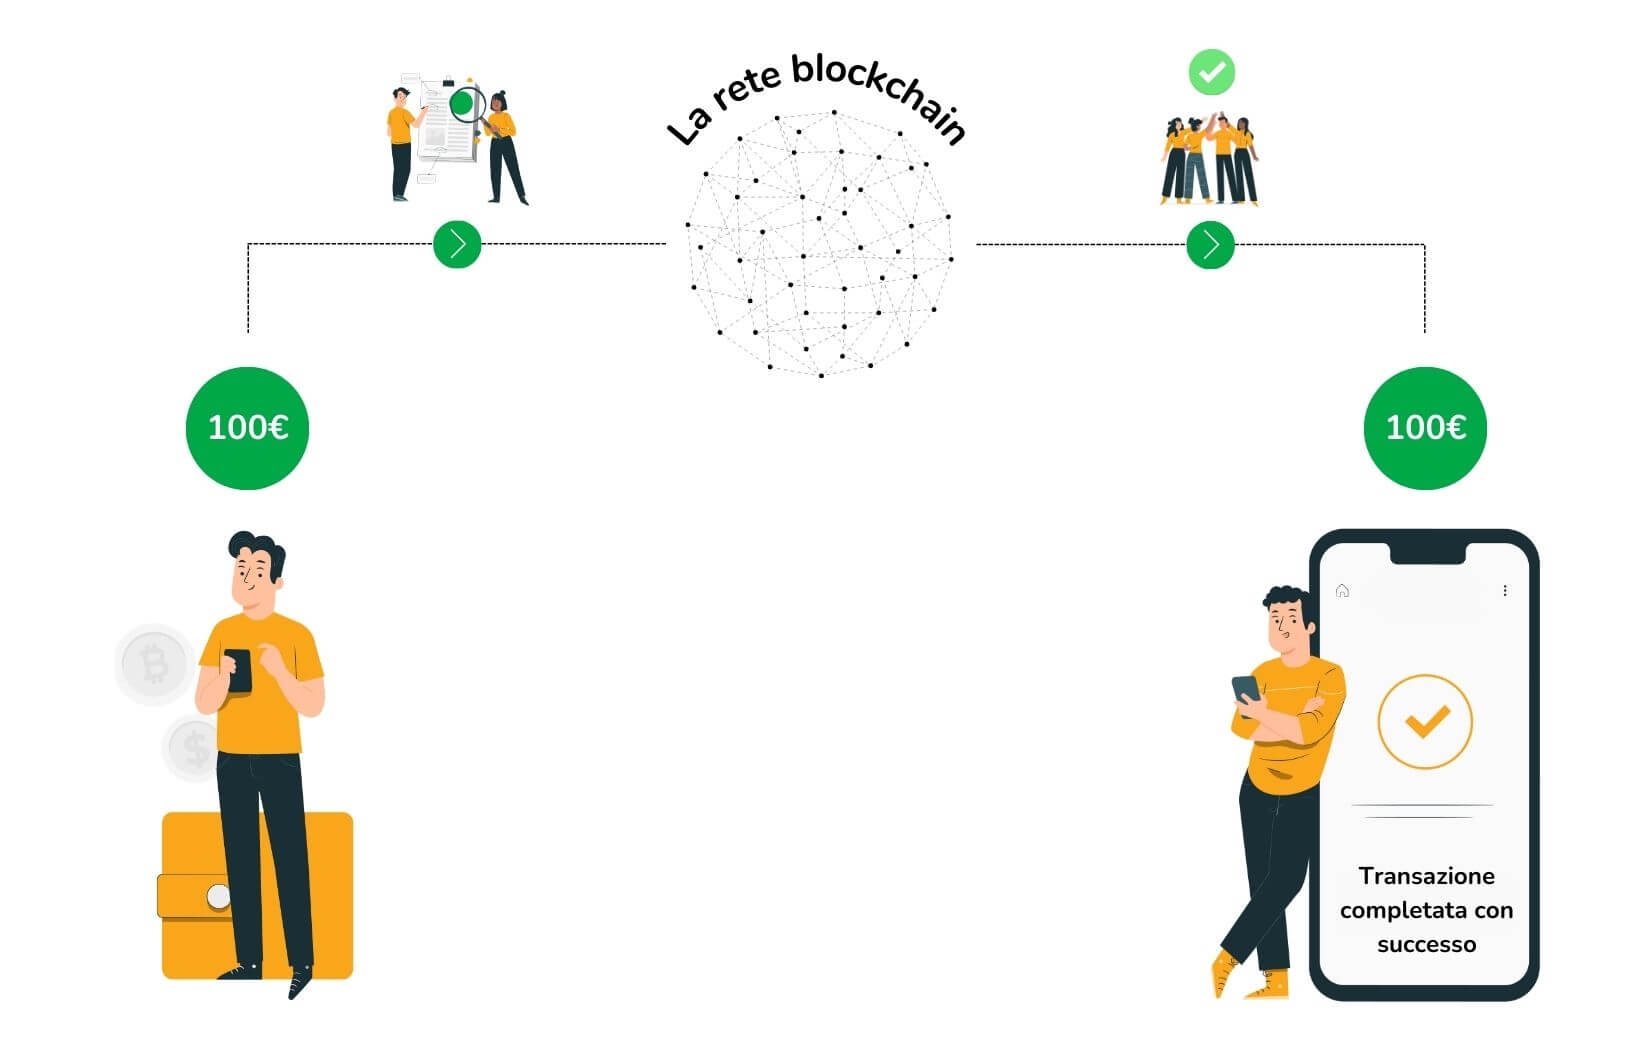 La rete blockchain verifica la transazione